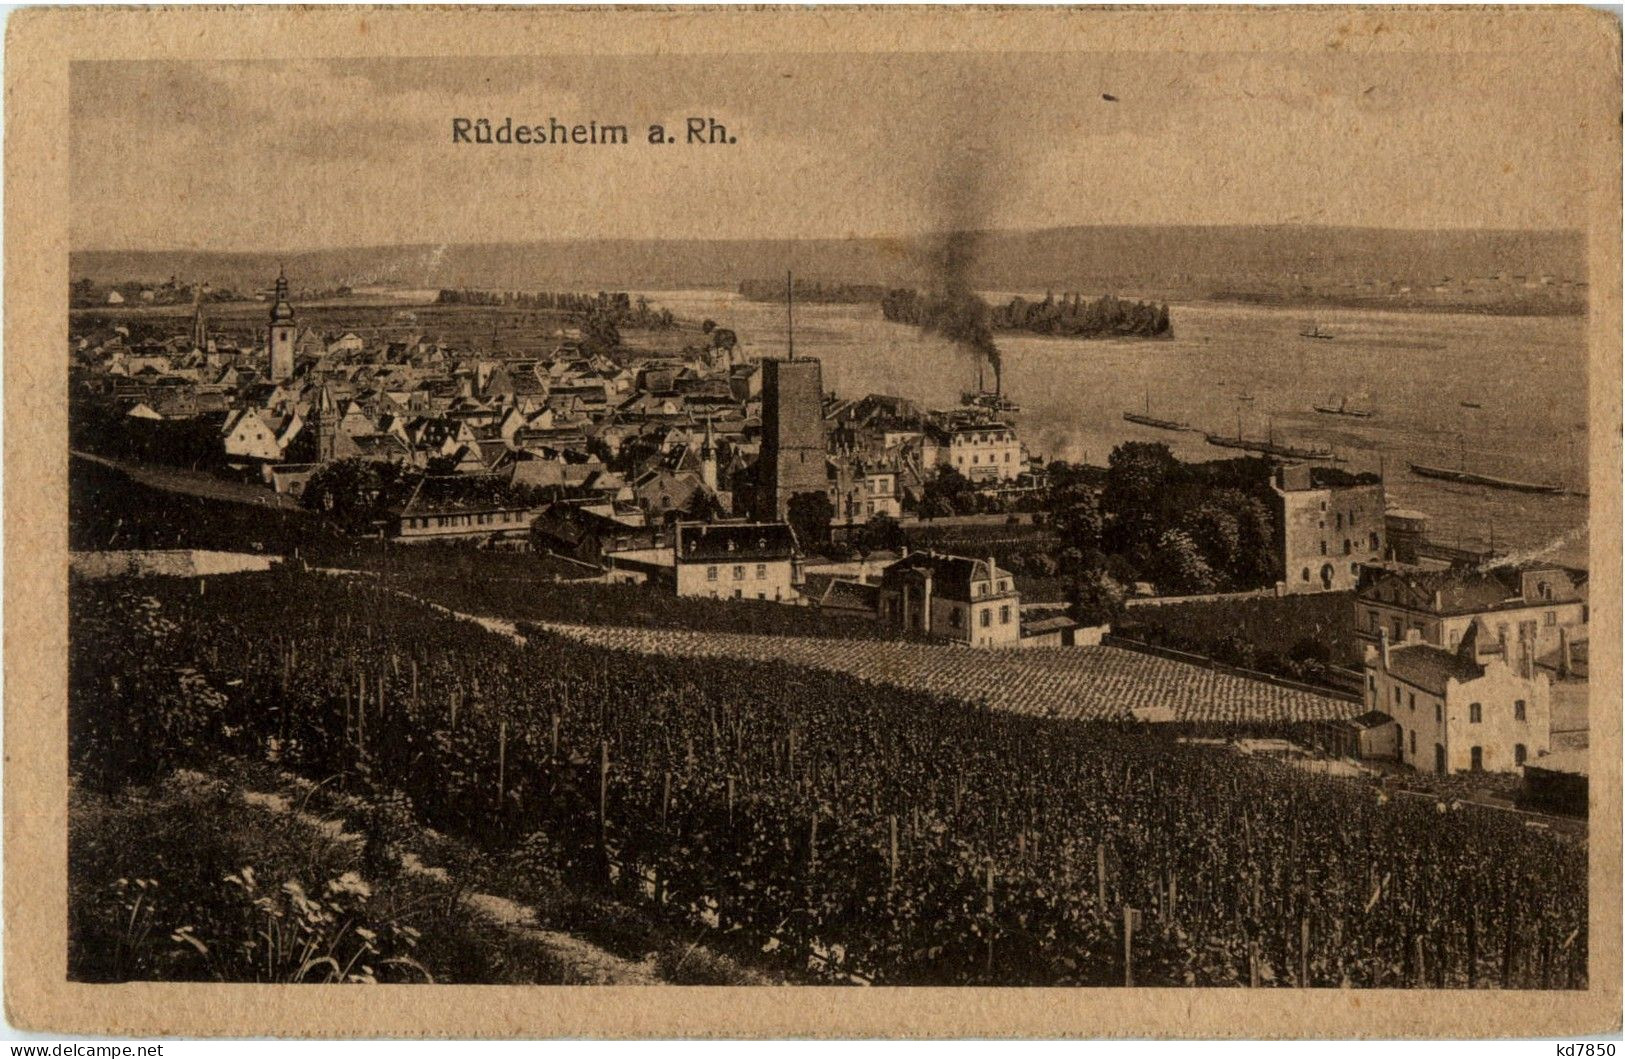 Rüdesheim - Ruedesheim A. Rh.